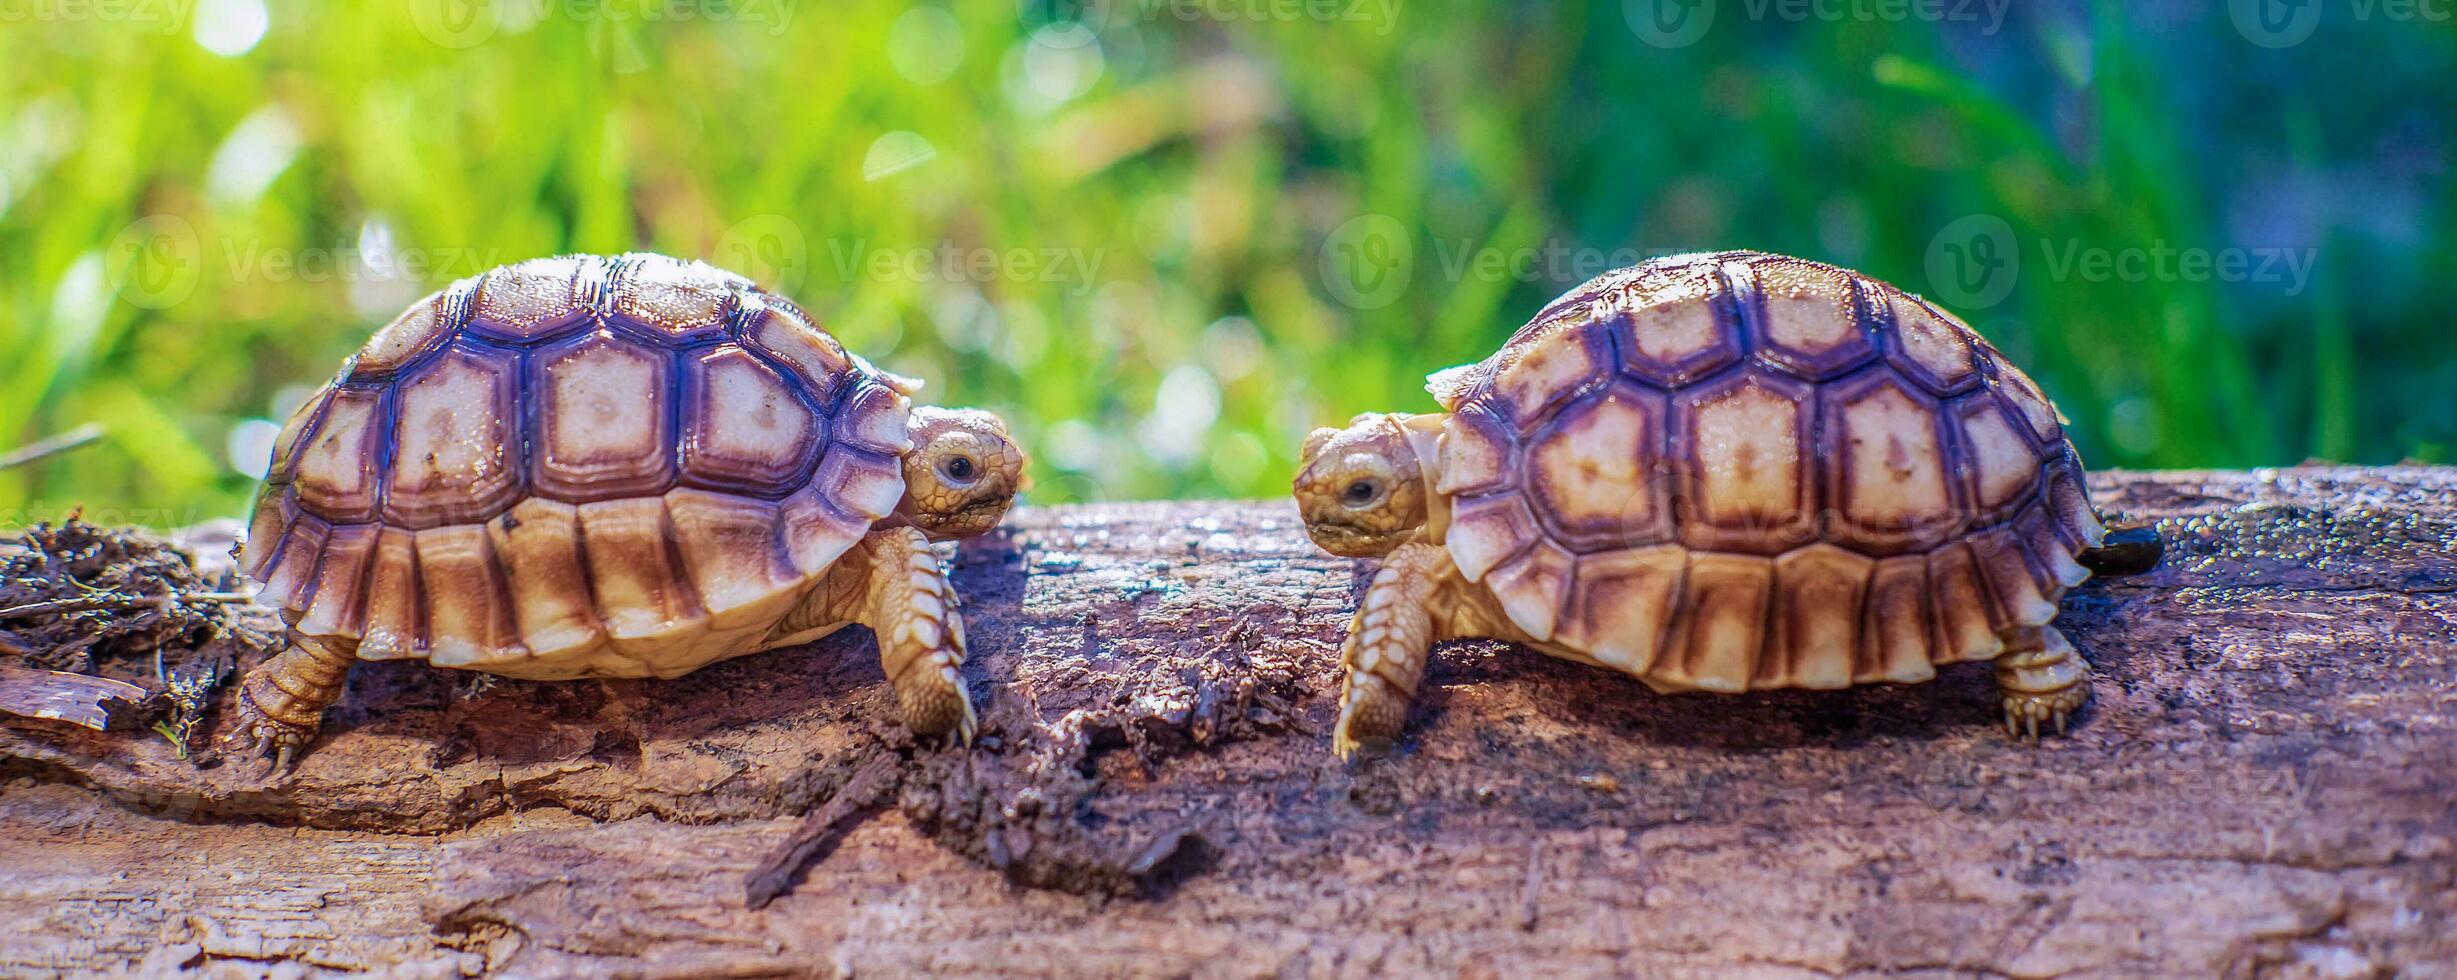 stänga upp av två sulcata sköldpadda eller afrikansk sporrade sköldpadda klassificerad som en stor sköldpadda i natur, topp se av par skön bebis afrikansk sporre sköldpaddor på en stor logga foto